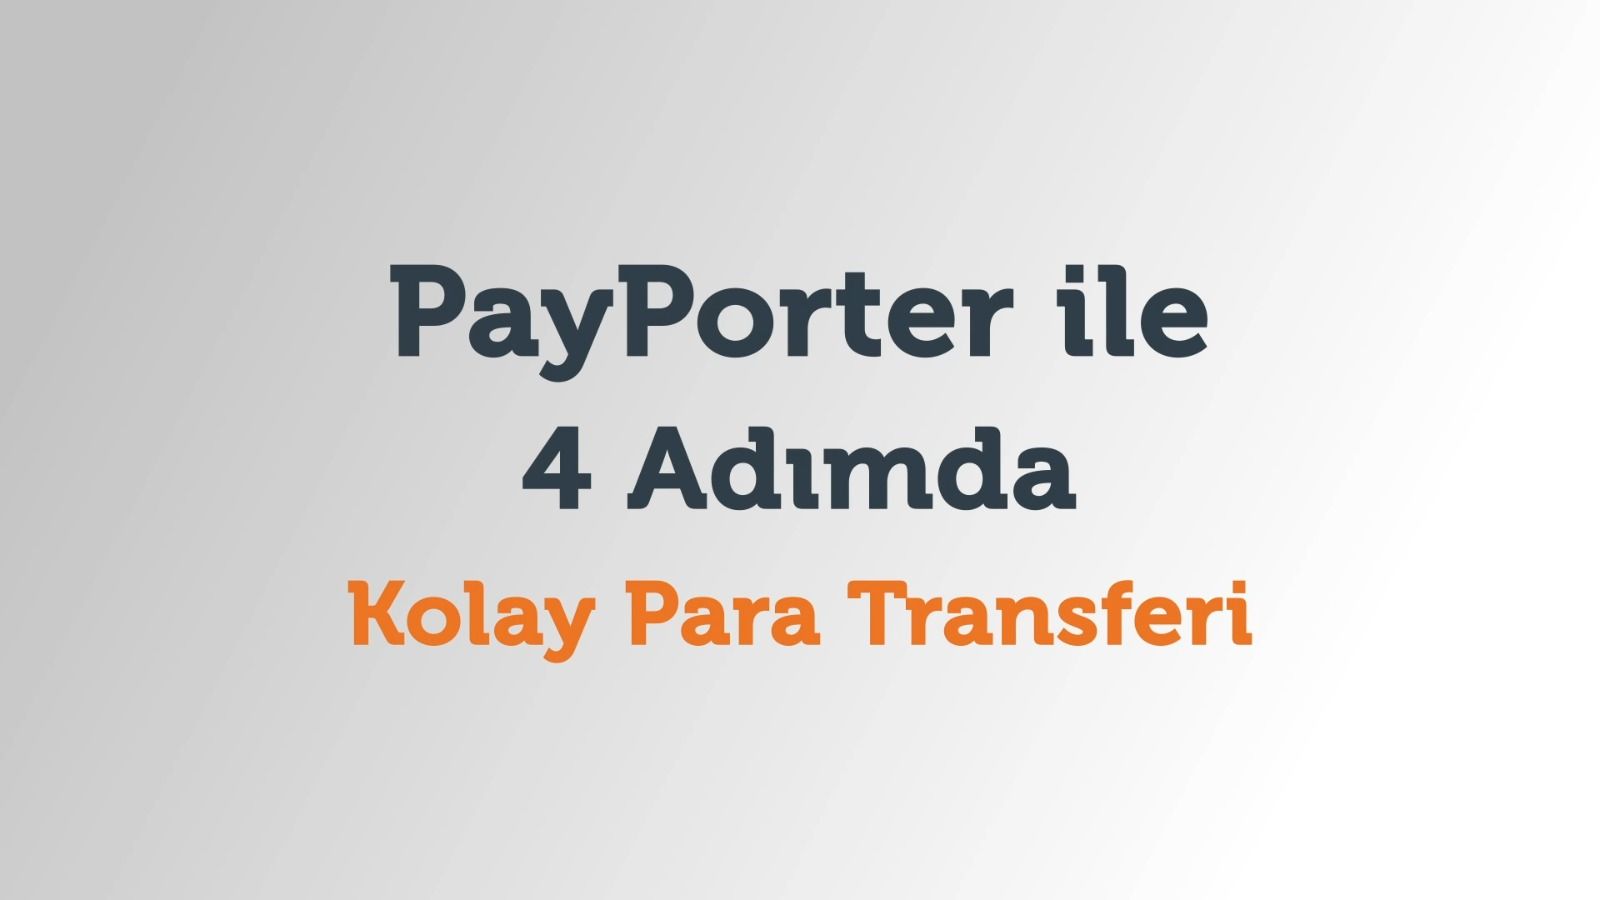 PayPorter ile 4 adımda kolay para transferi